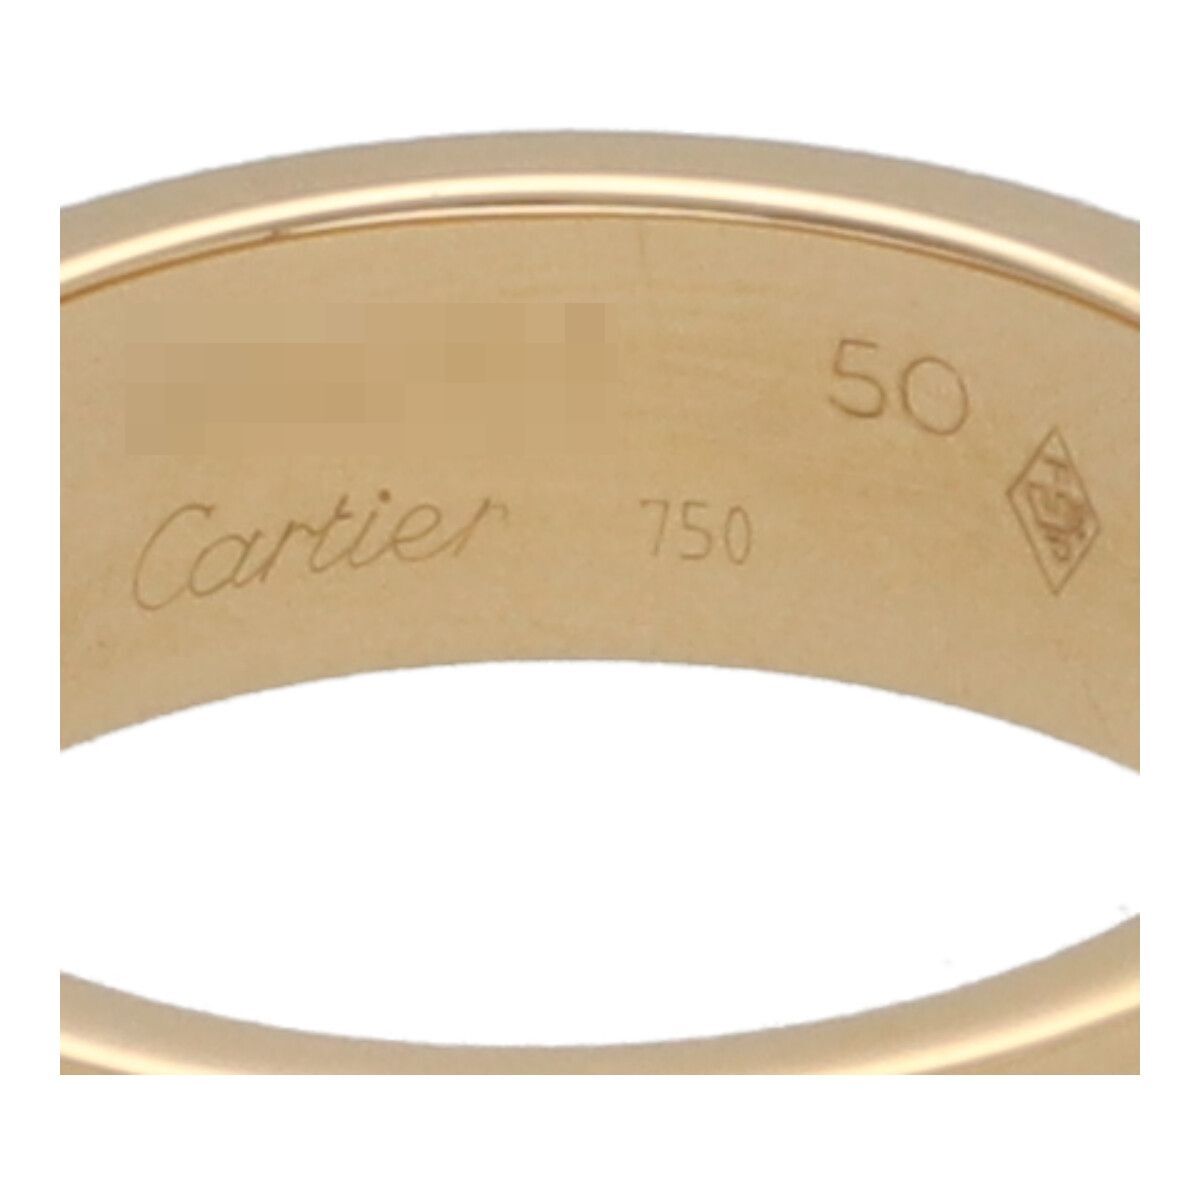 【中古】 Cartier カルティエ LOVE リング 50 B4084650 K18YG イエローゴールド ラブ 指輪 24007450 RS_画像7